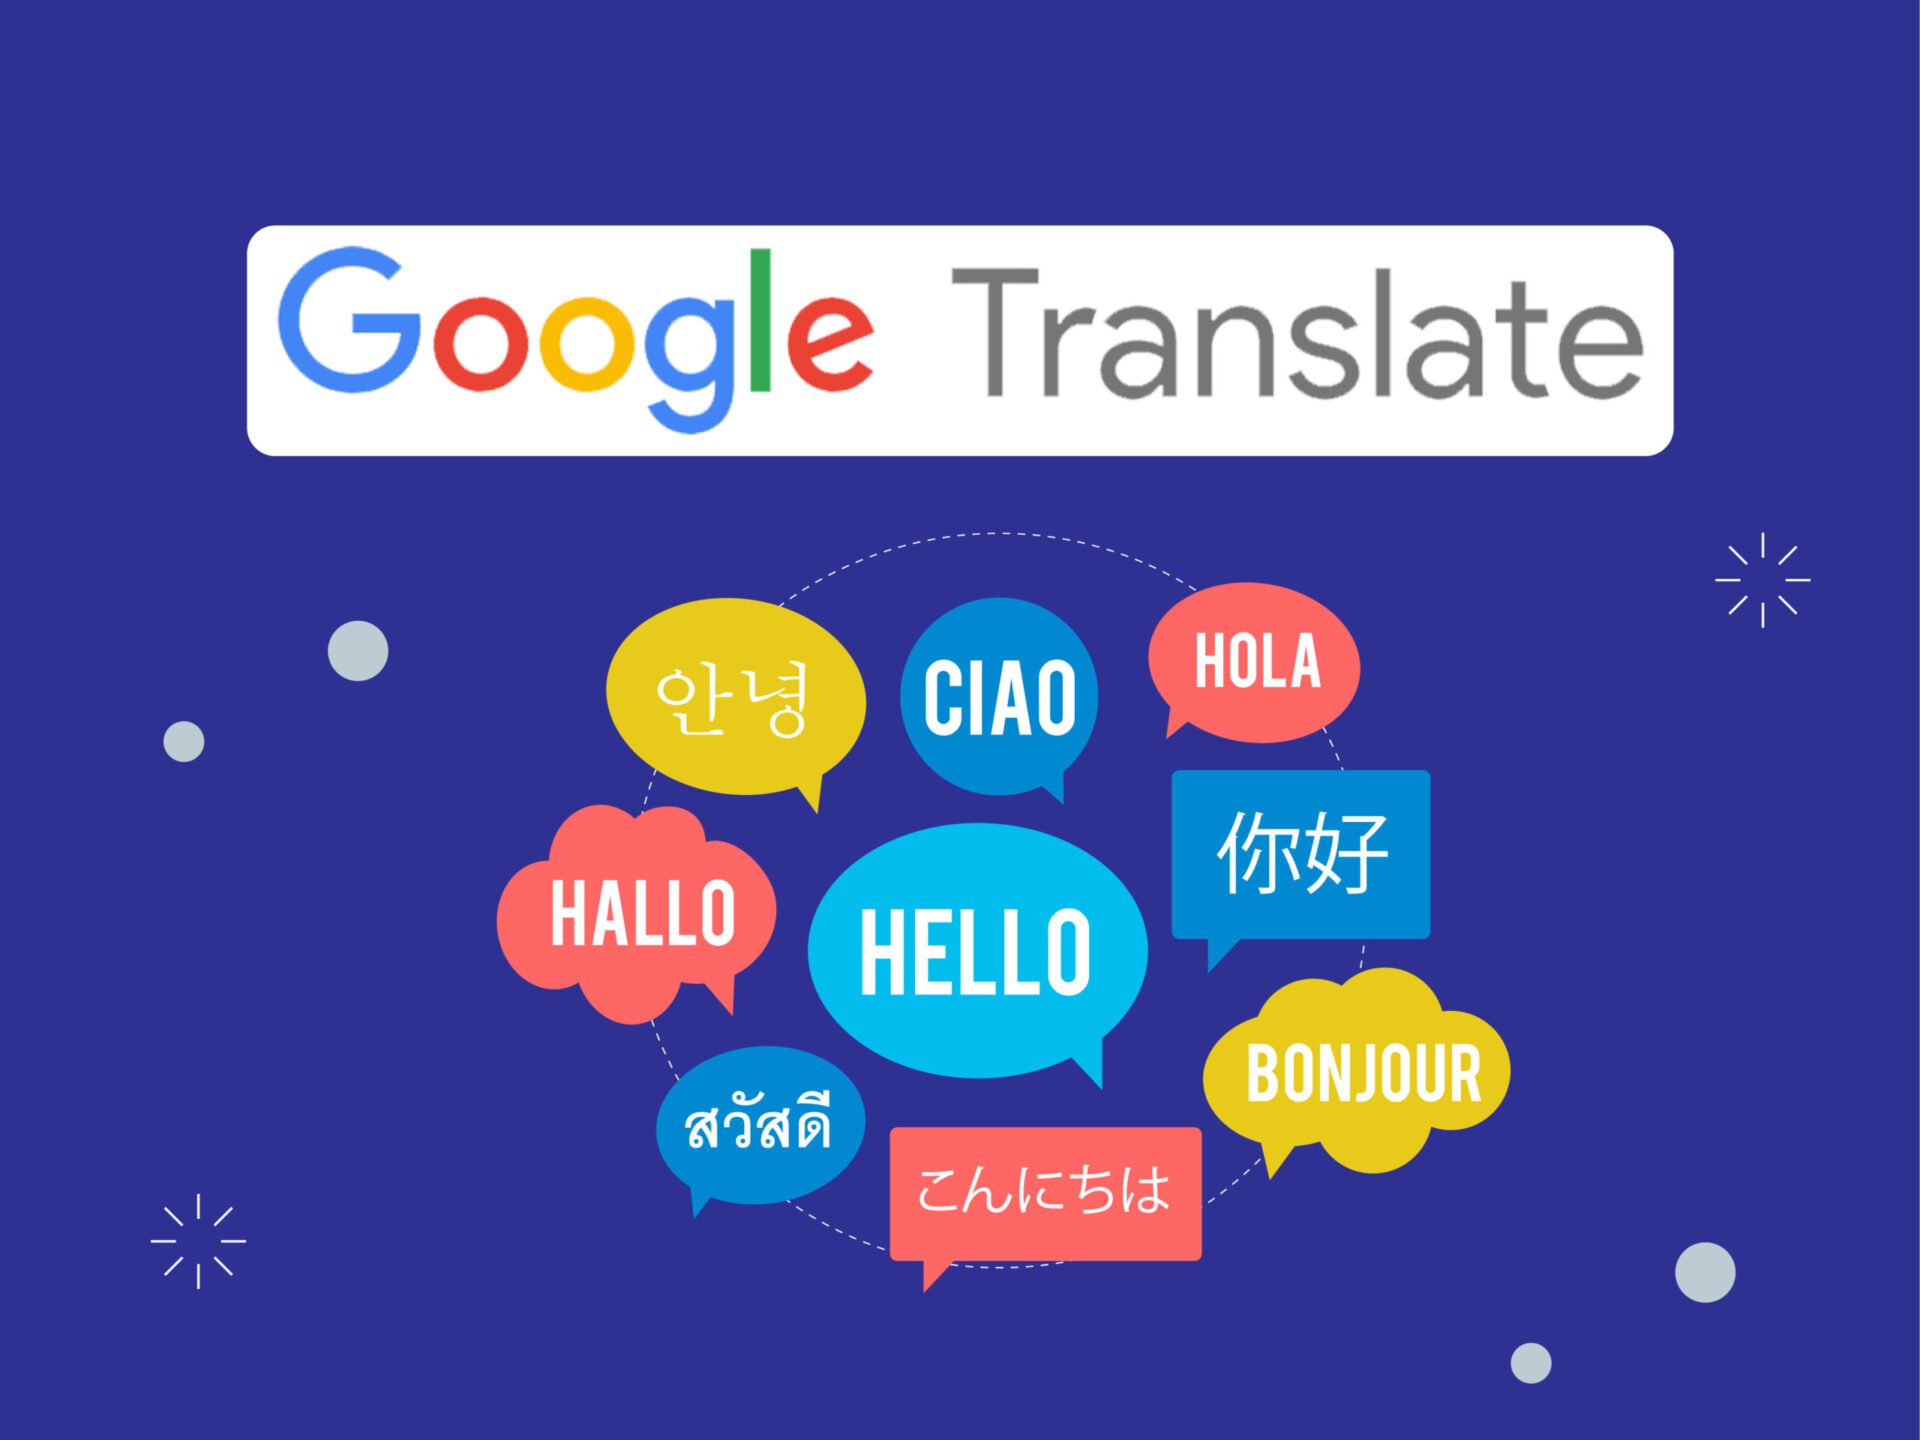 Traduzir imagens com o Google Tradutor ficou fácil